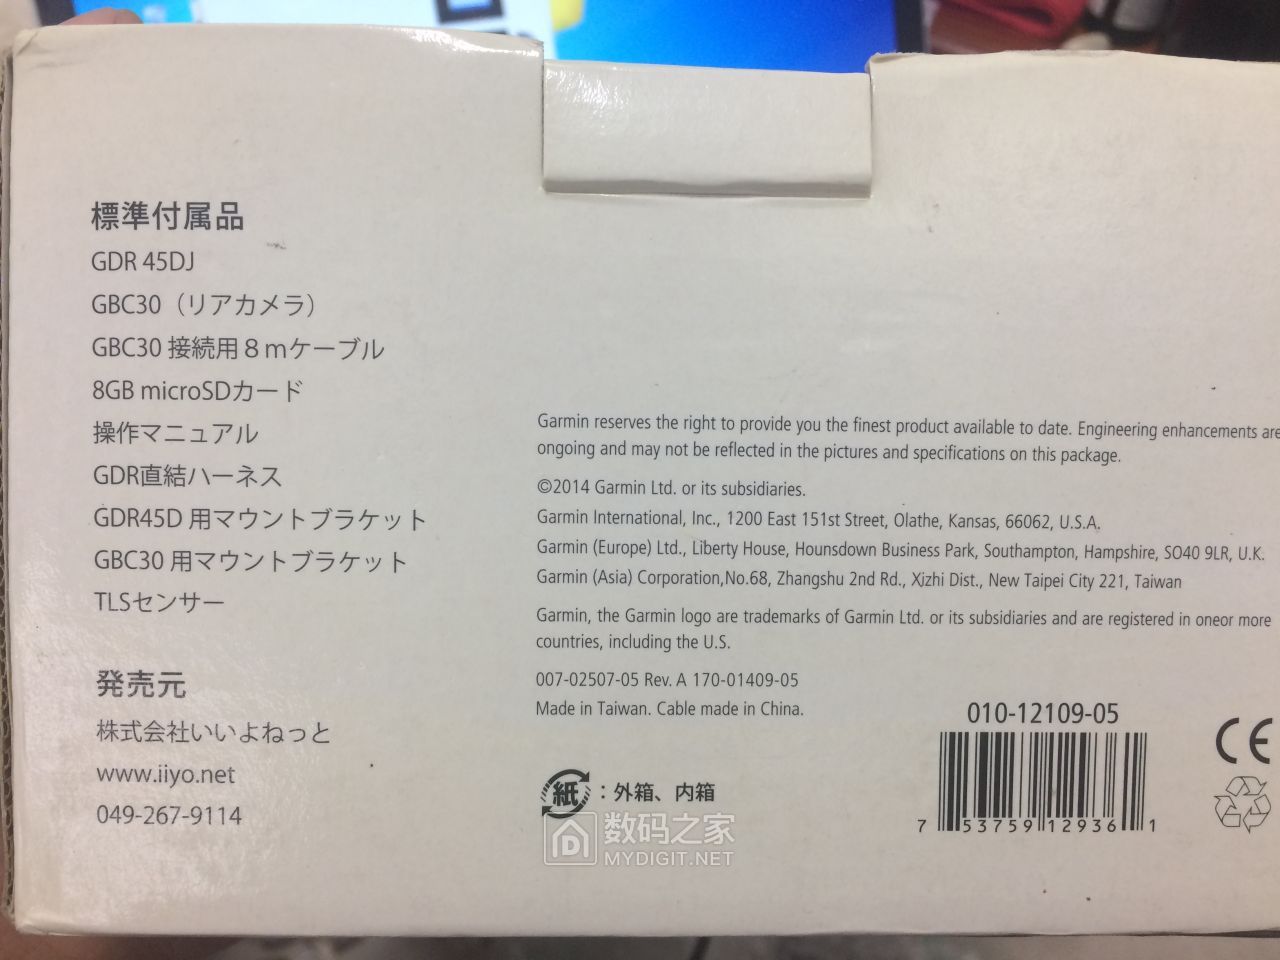 外包装上的日文介绍